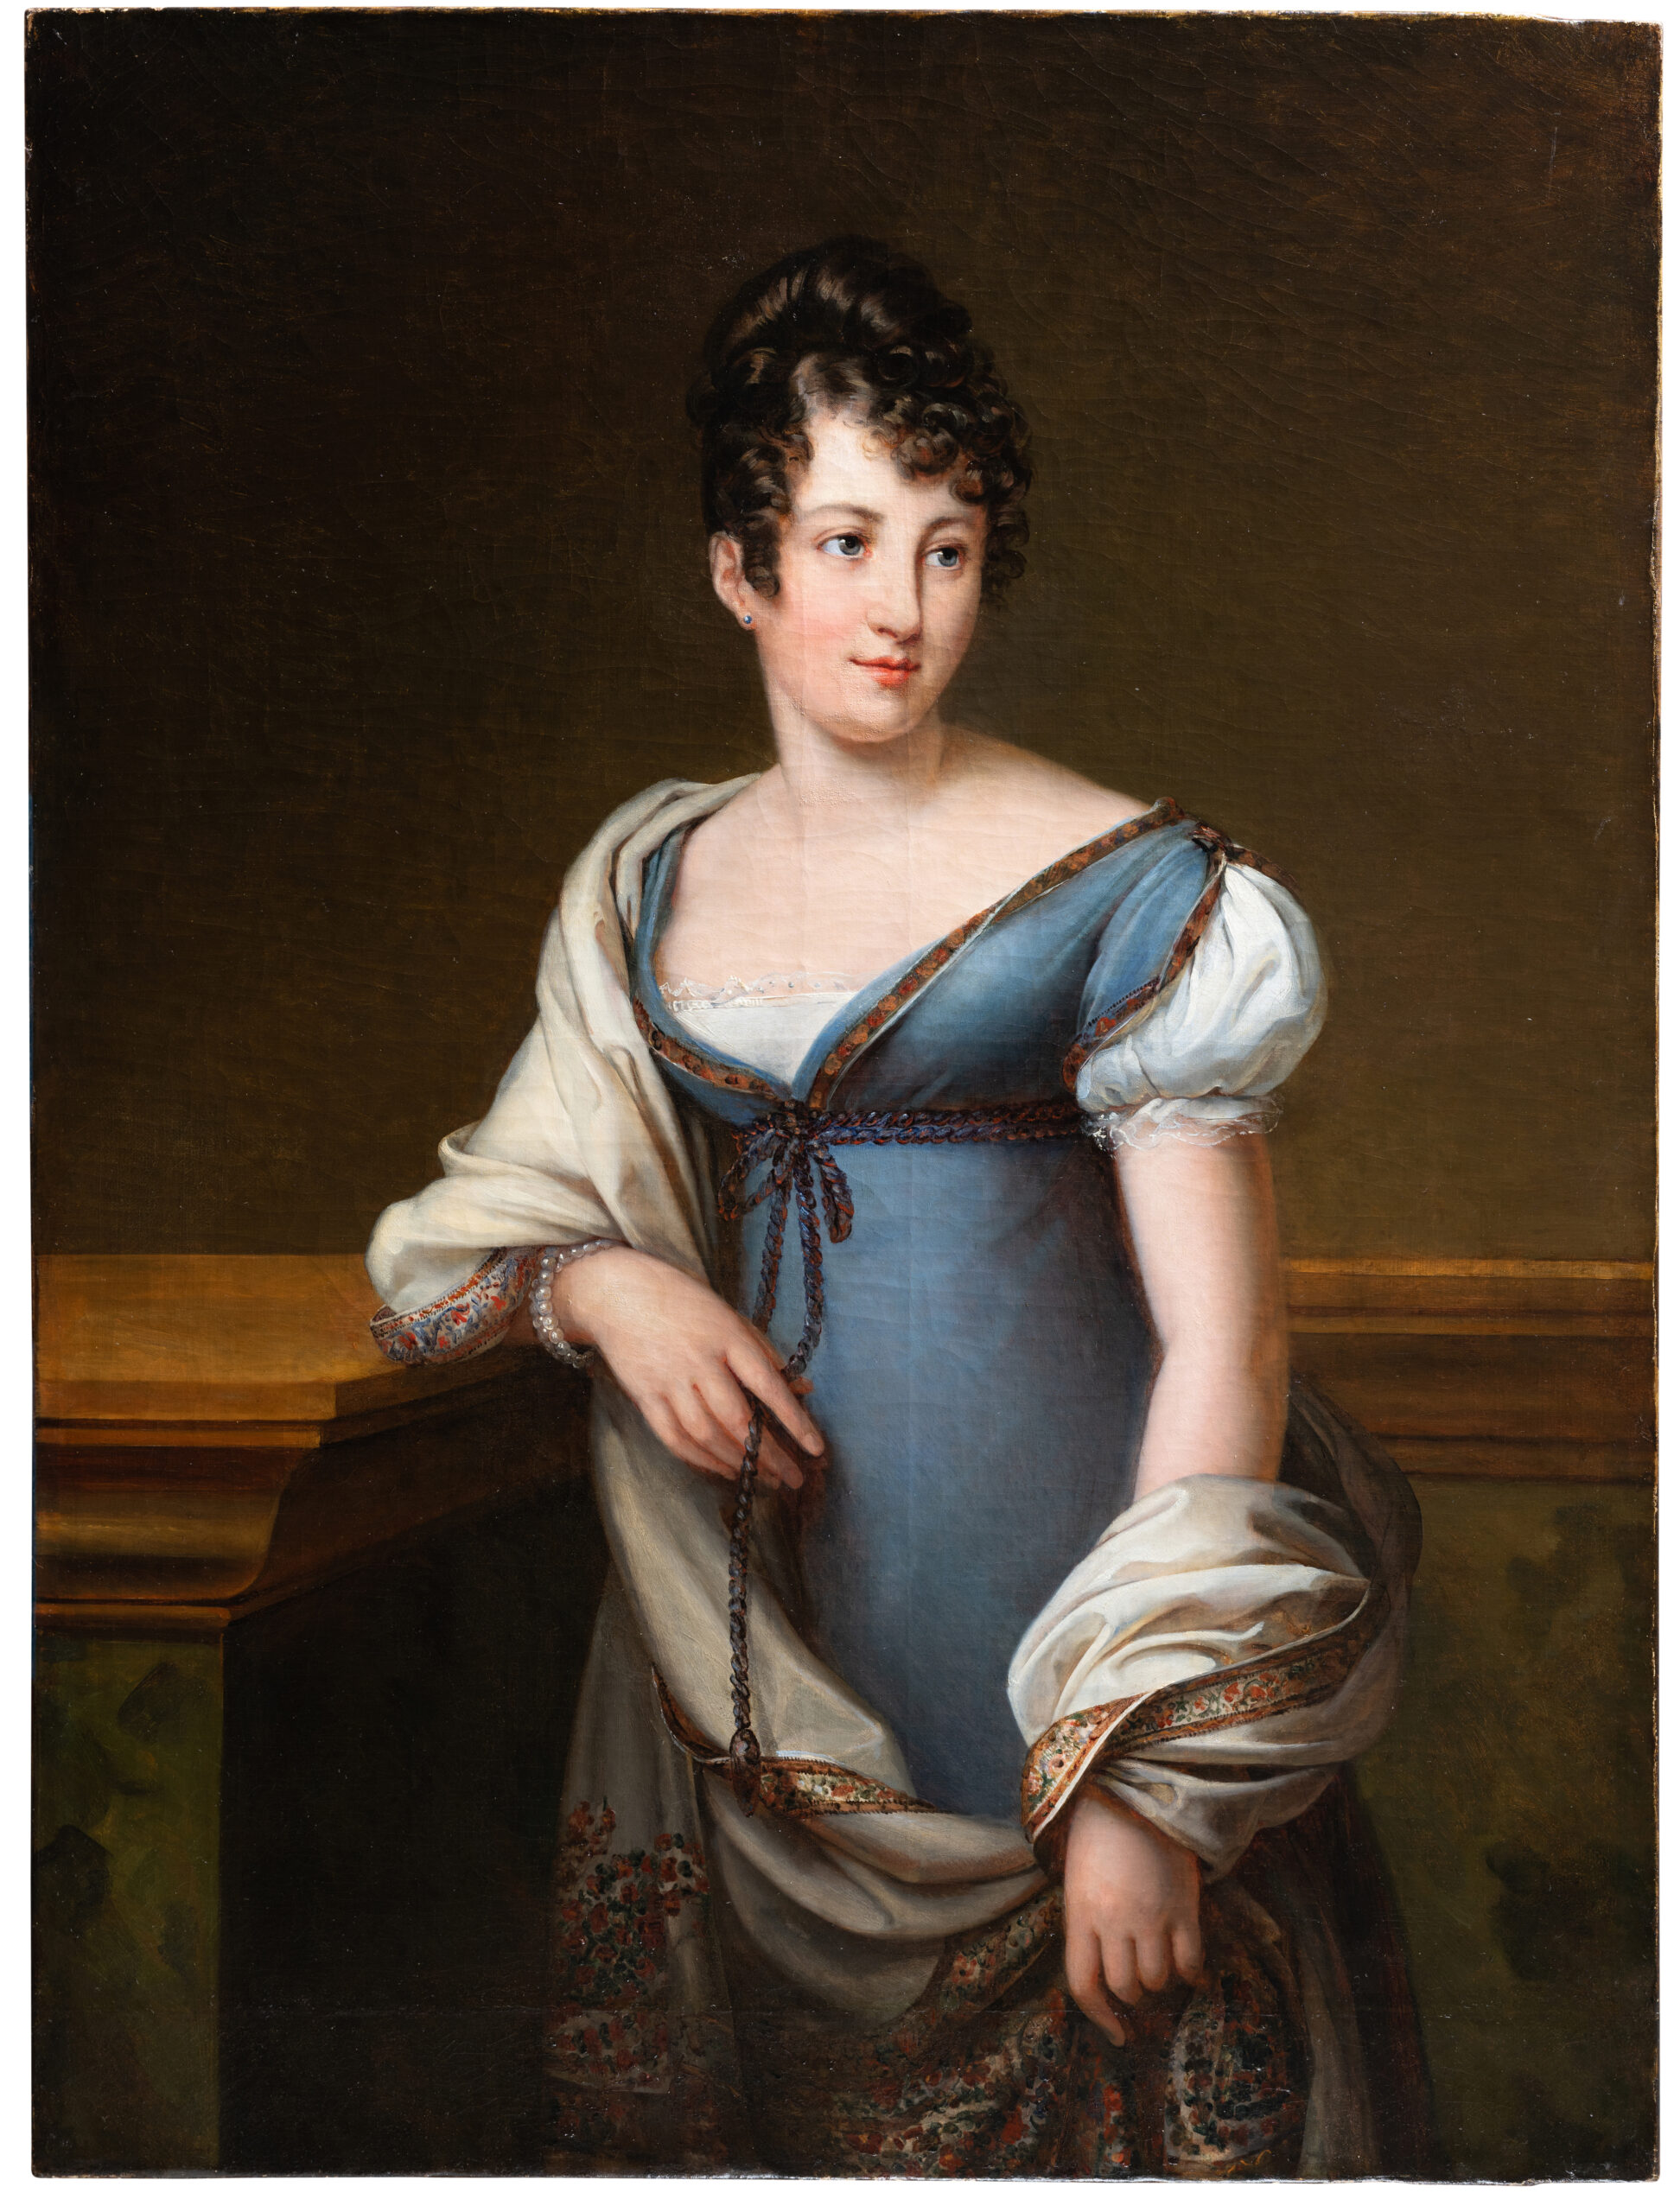 Julie Duvidal de Montferrier, comtesse Abel Hugo (1797-1865), Portrait de Marie-Constance-Albertine Moisson de Vaux, baronne de Montaran, c. 1817, huile sur toile, 109,6 x 82,4 cm, coll. part. © Inu studio